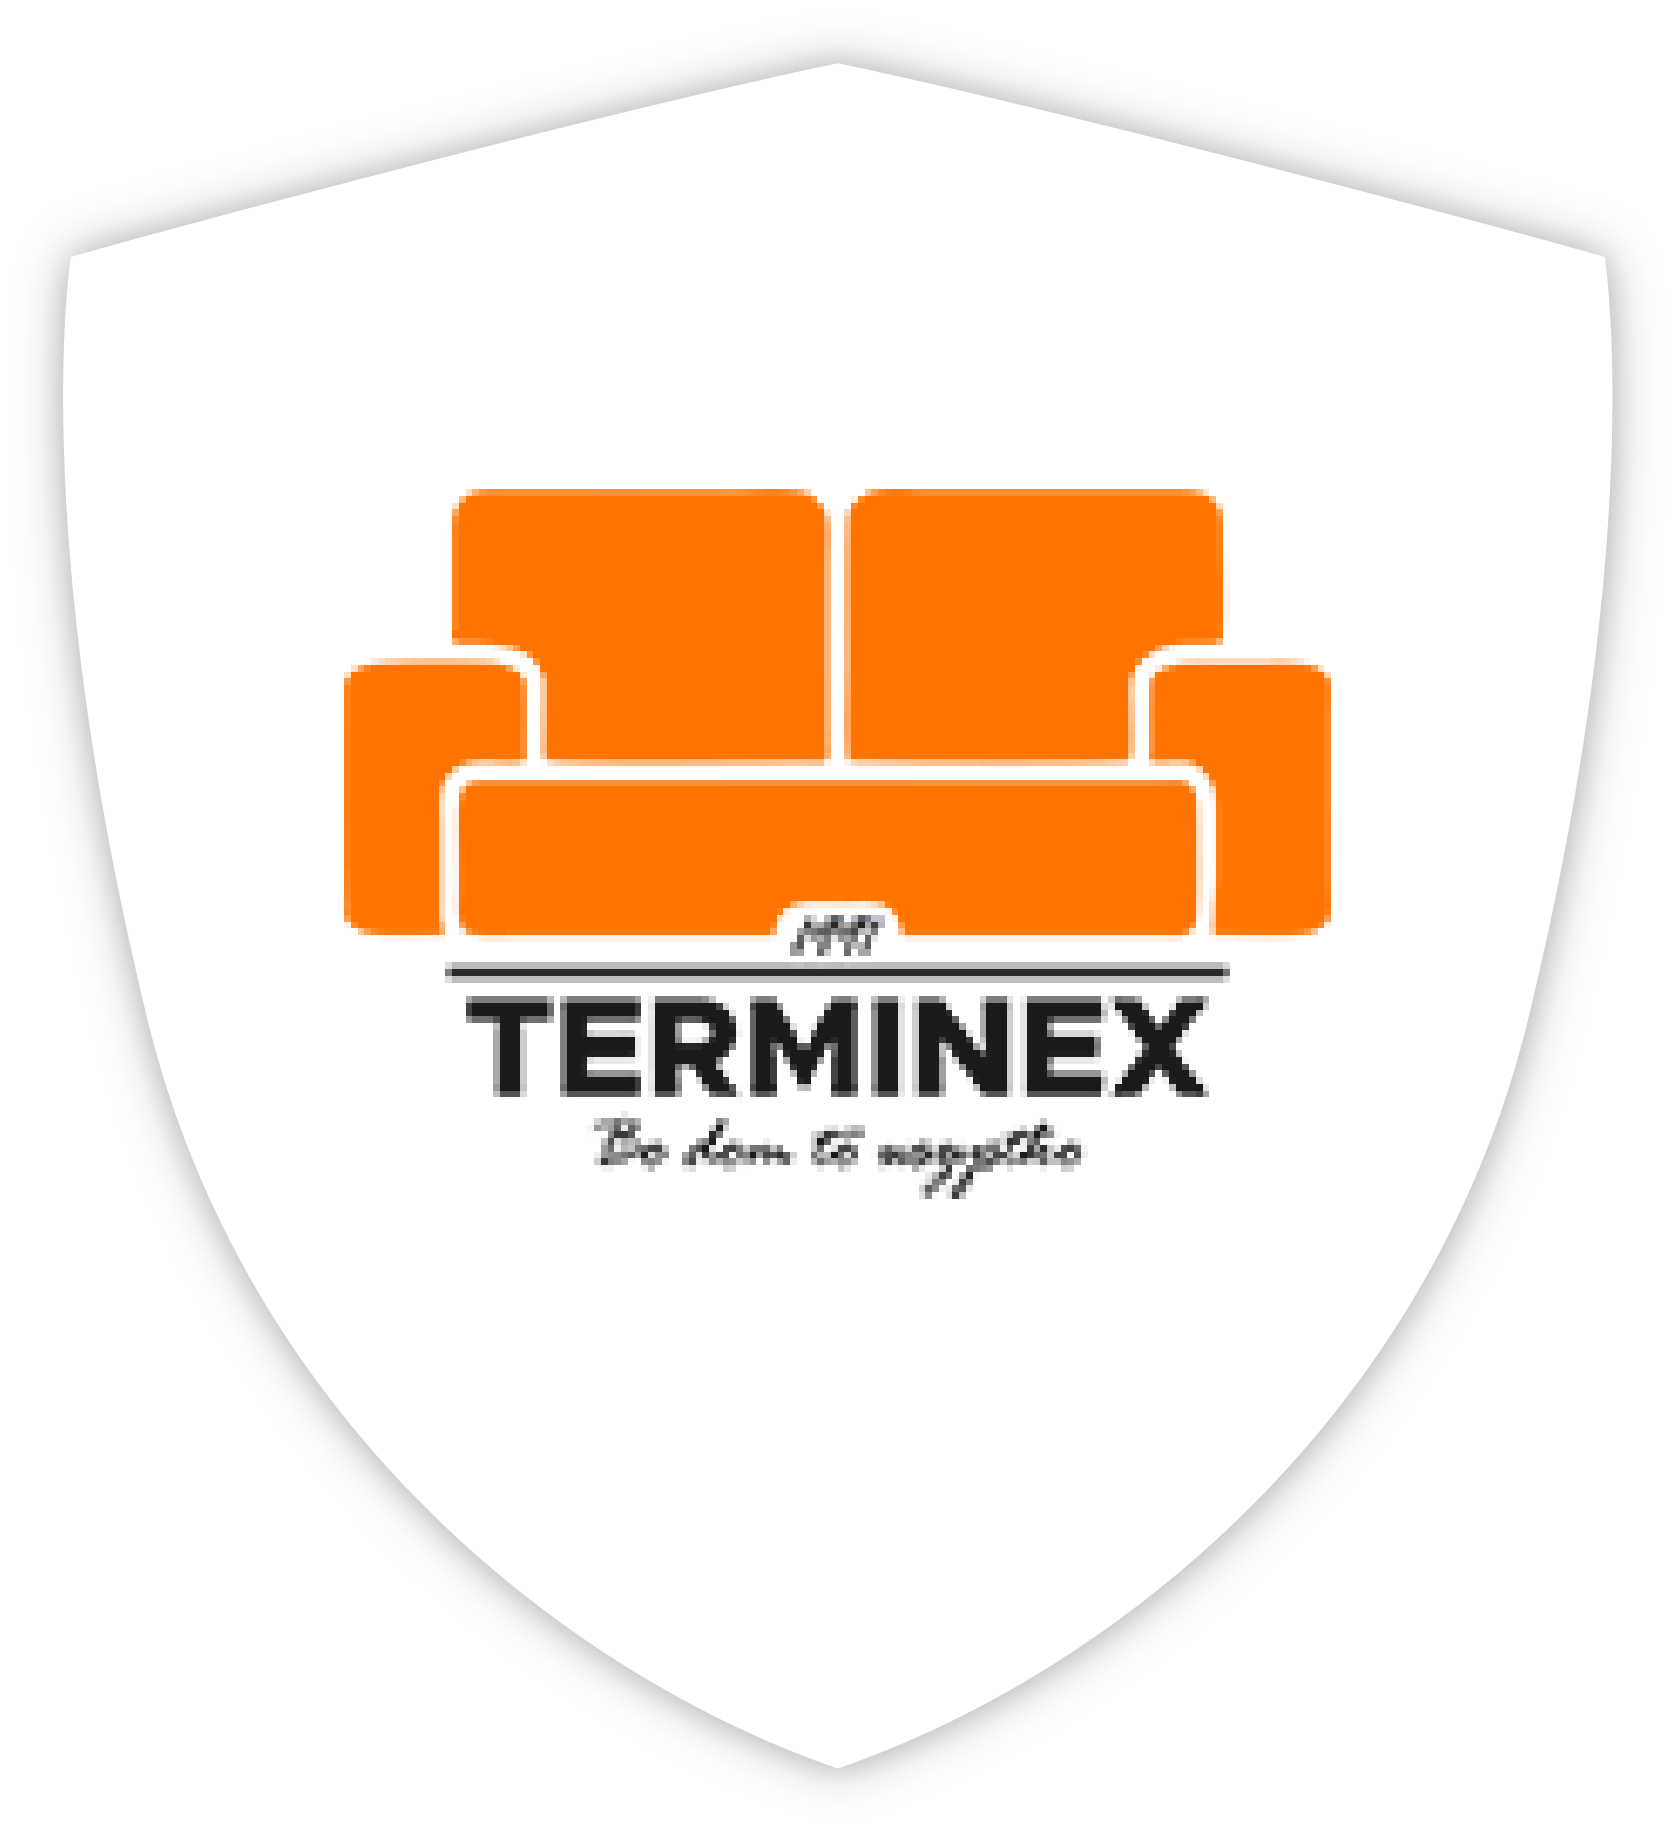 Terminex